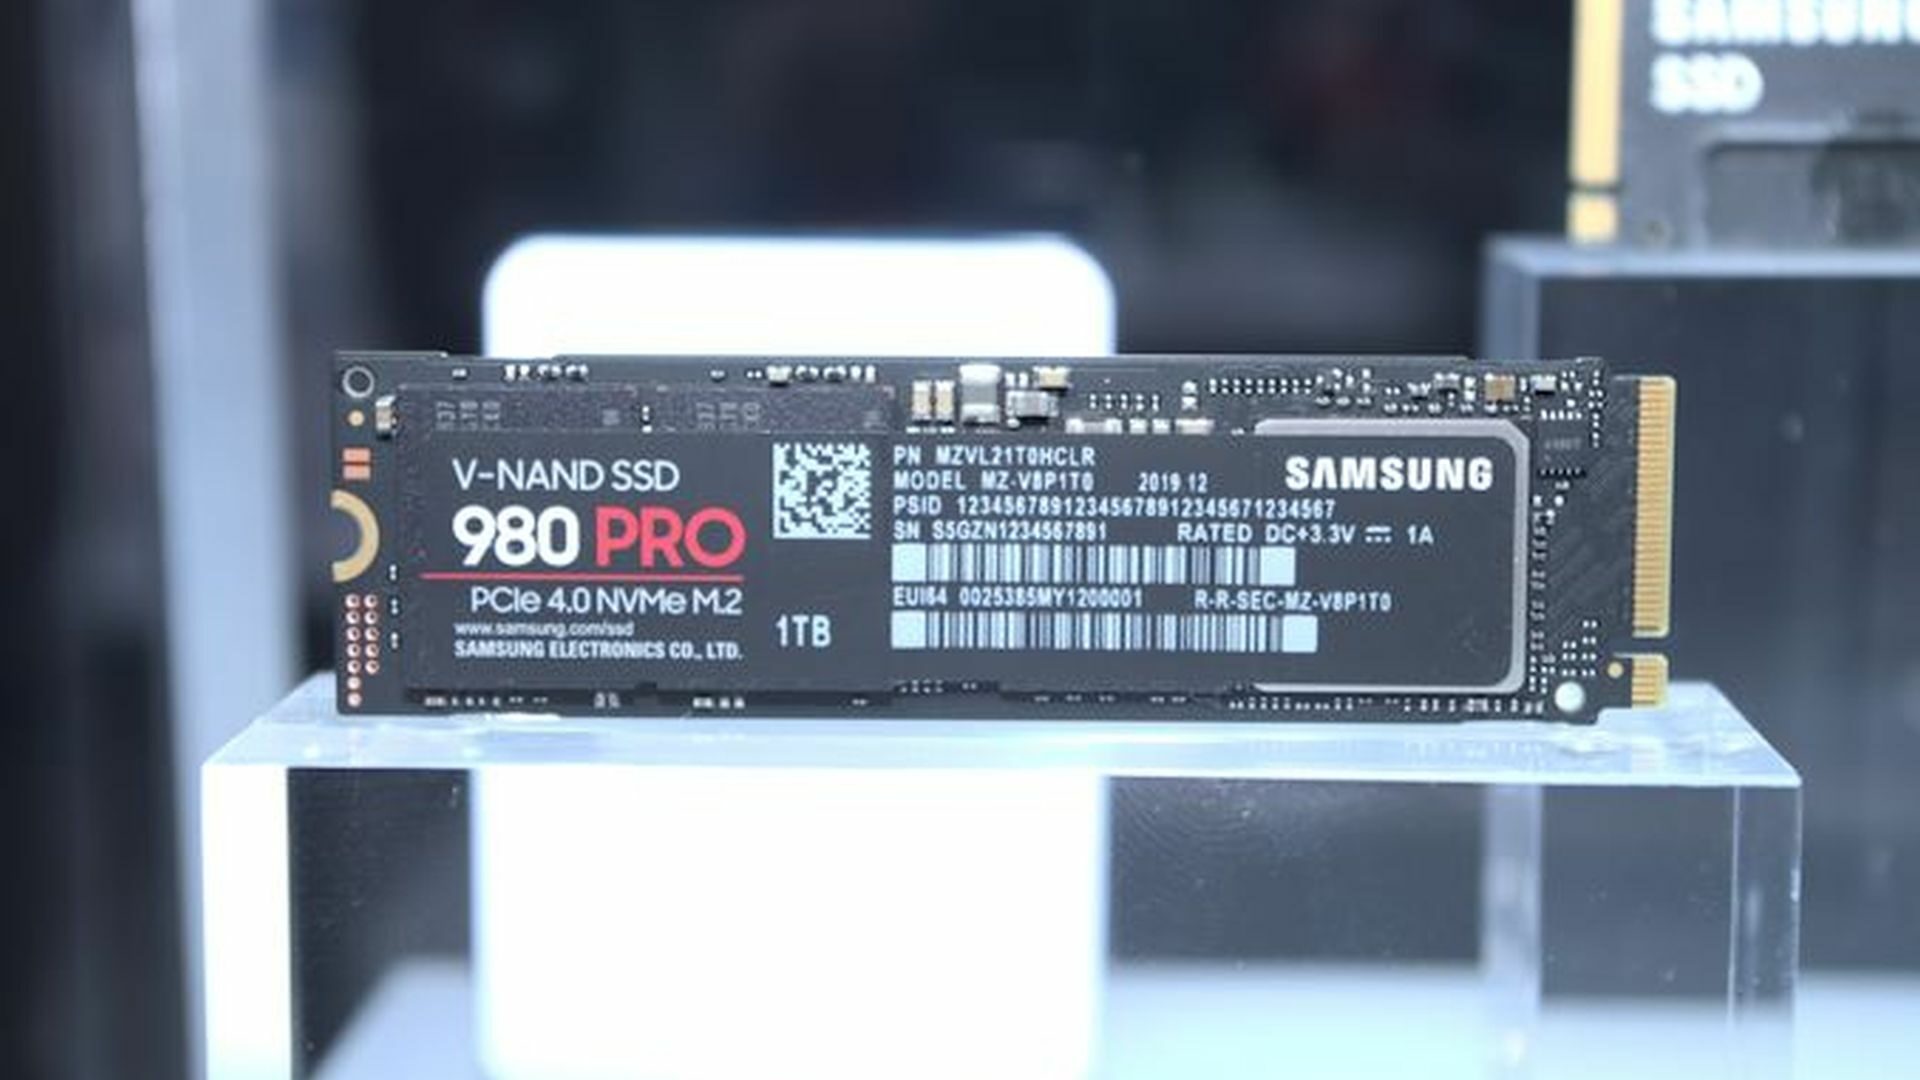  Samsung 970 EVO Plus Series - 1TB PCIe NVMe - M.2